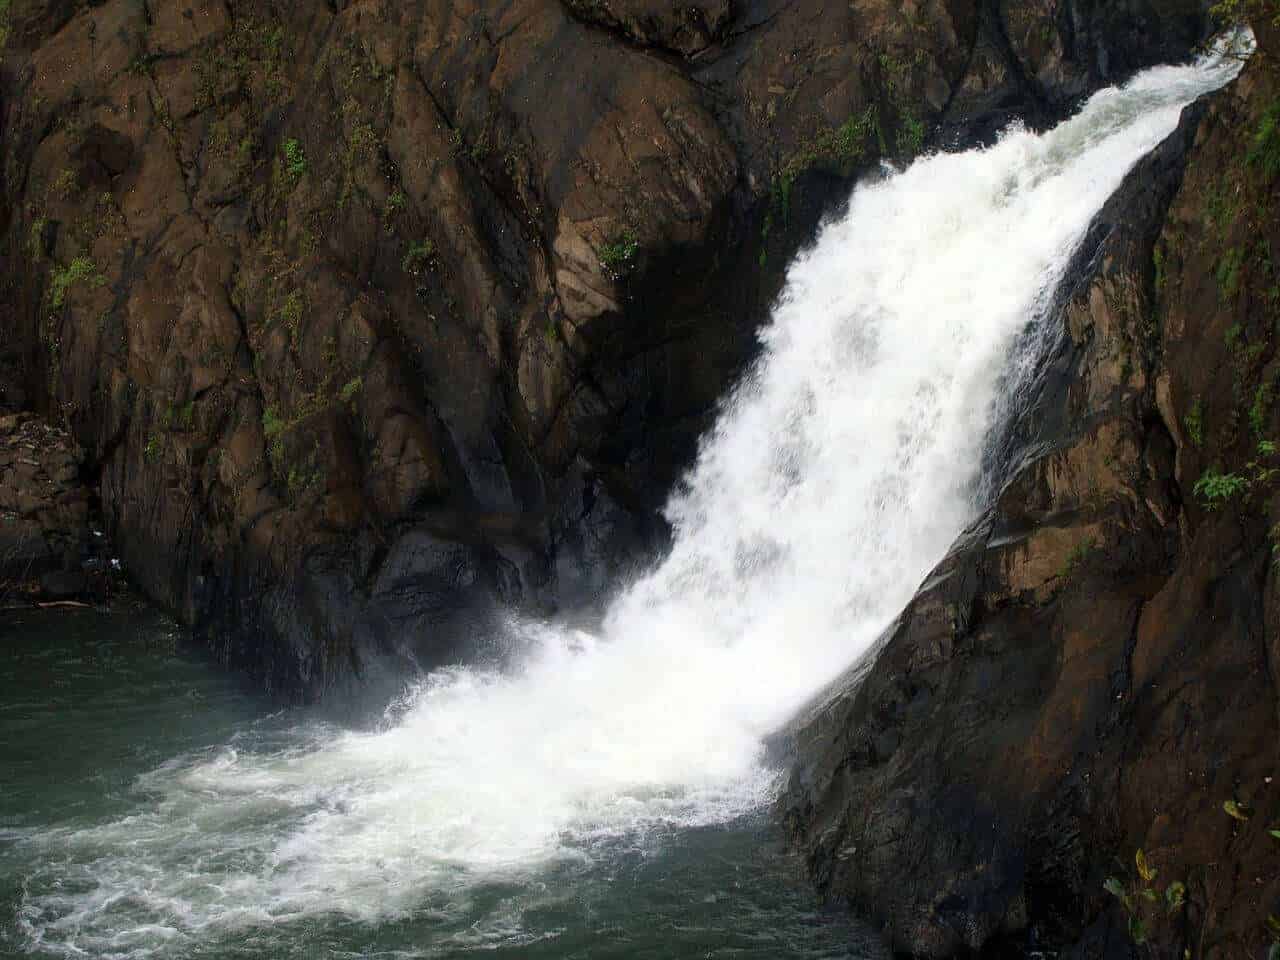 Dudhsagar waterfalls - Goa Travel Guide